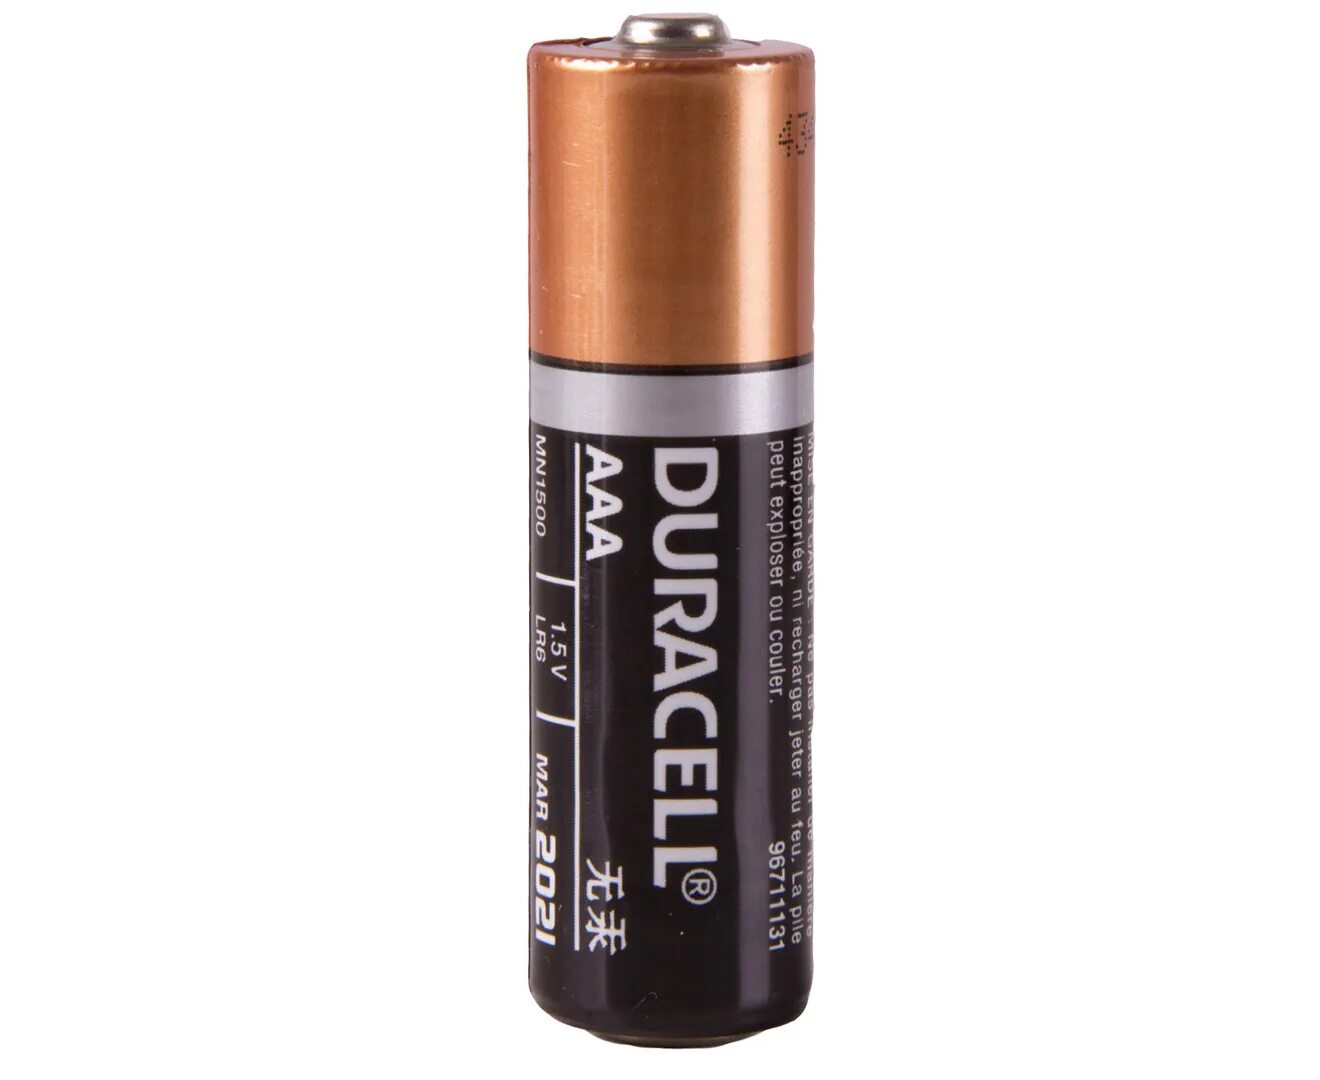 Батарейка Duracell AA. Дурасель duraseal батарейки. Батарейка Duracell lr06 up. Батарейки Duracell lr6 AA алкалиновые (щелочные) пальчиковые.